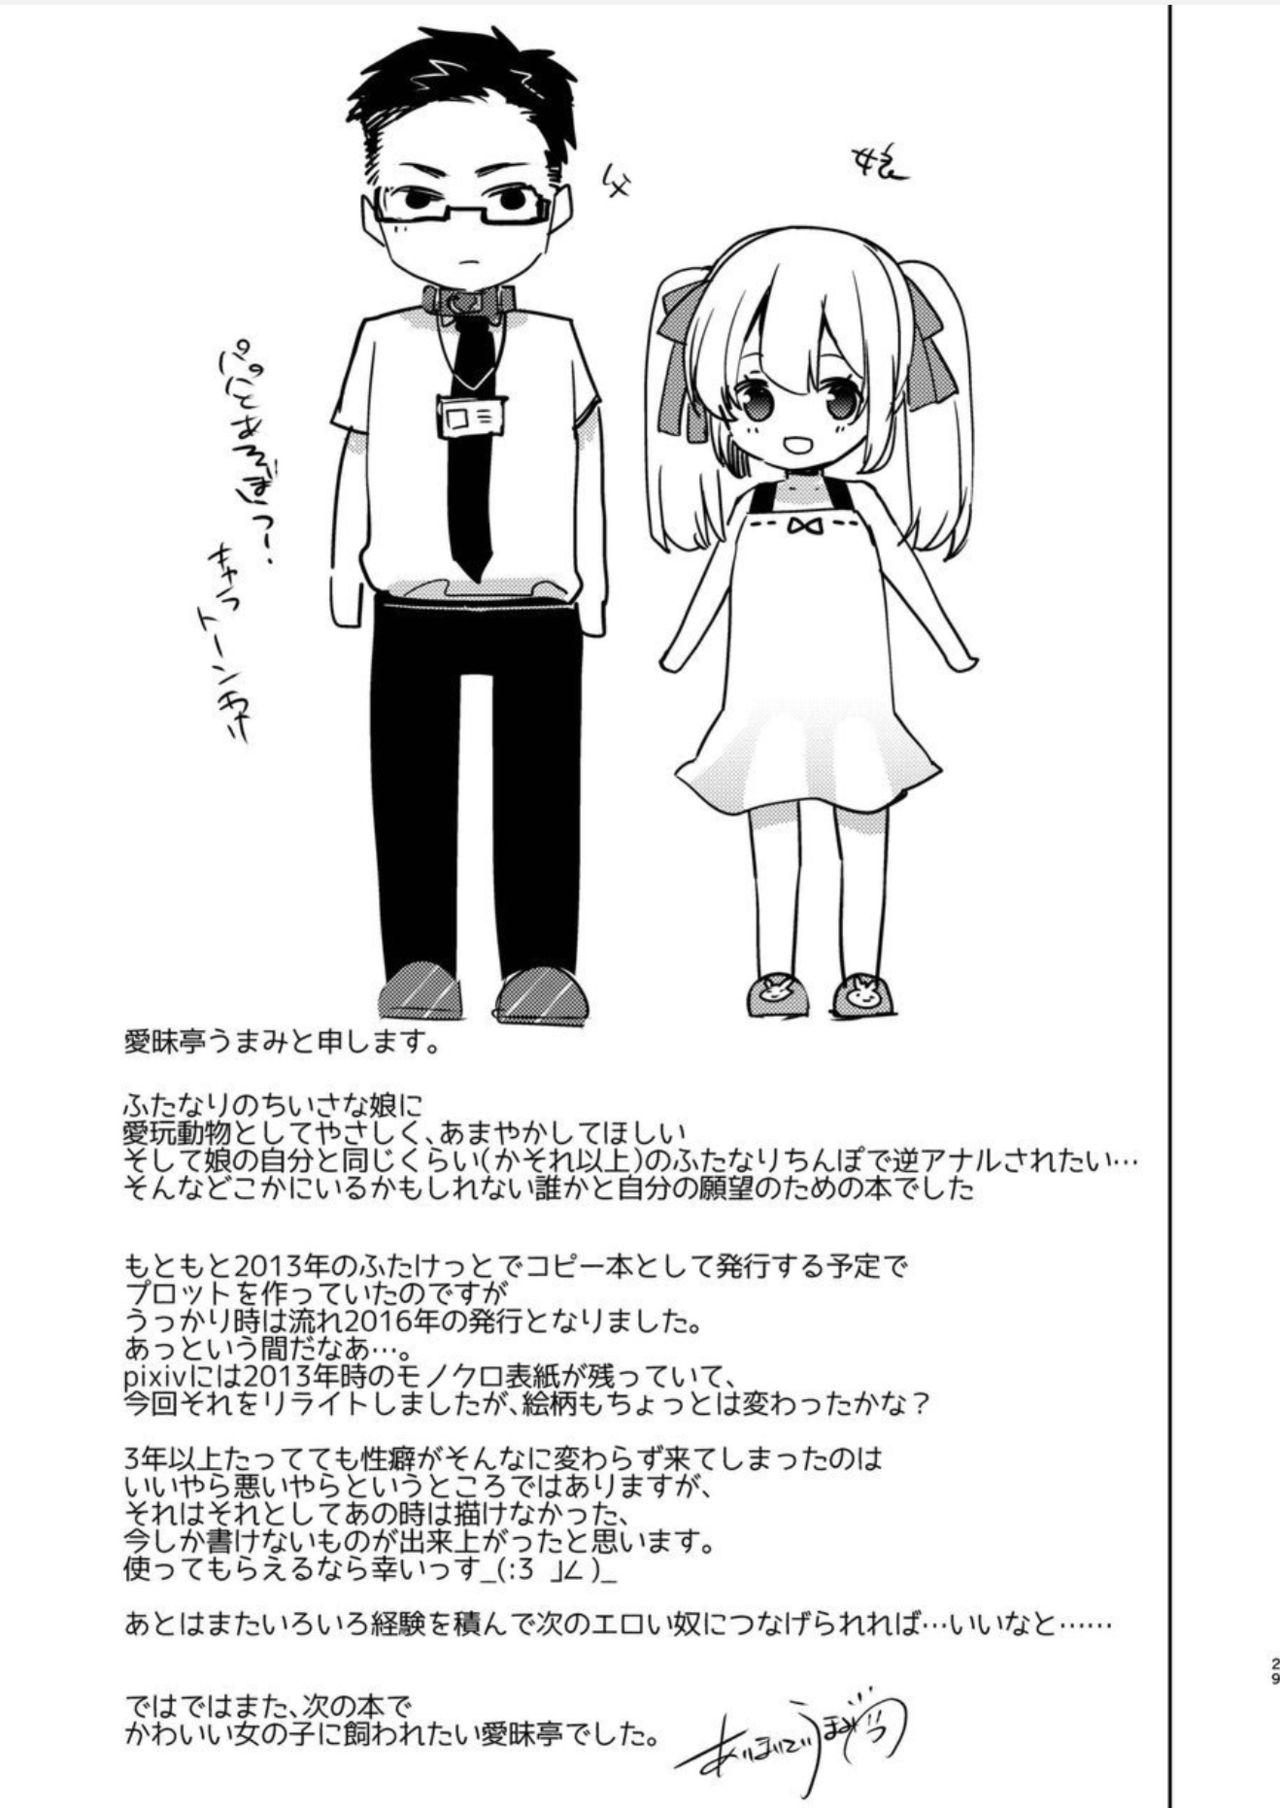 Yoiko no Futanari Gyaku Anal Manga "Papa to Asobou!" | Futanari Anal Manga for Good Children: "Play with Daddy!" 27